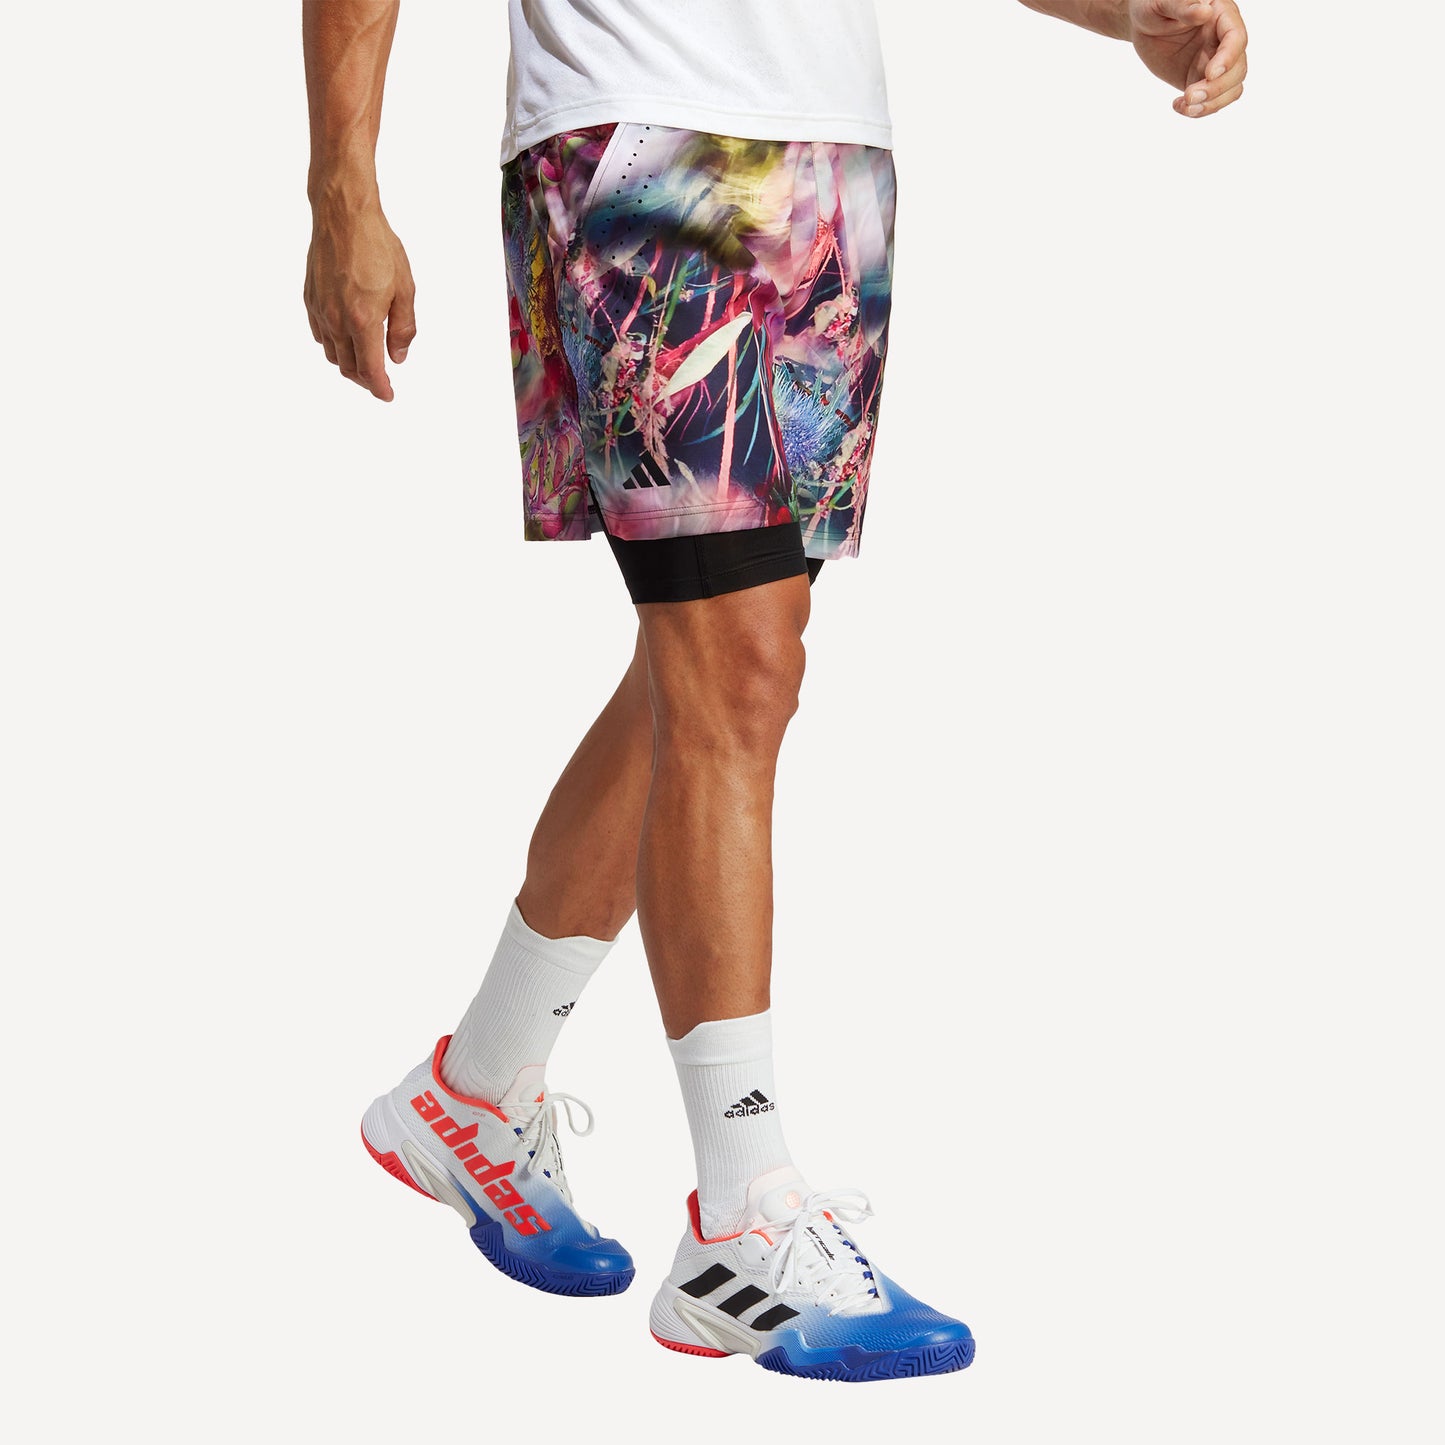 adidas Melbourne Ergo Men's Graphic Tennis Shorts Multicolor (4)